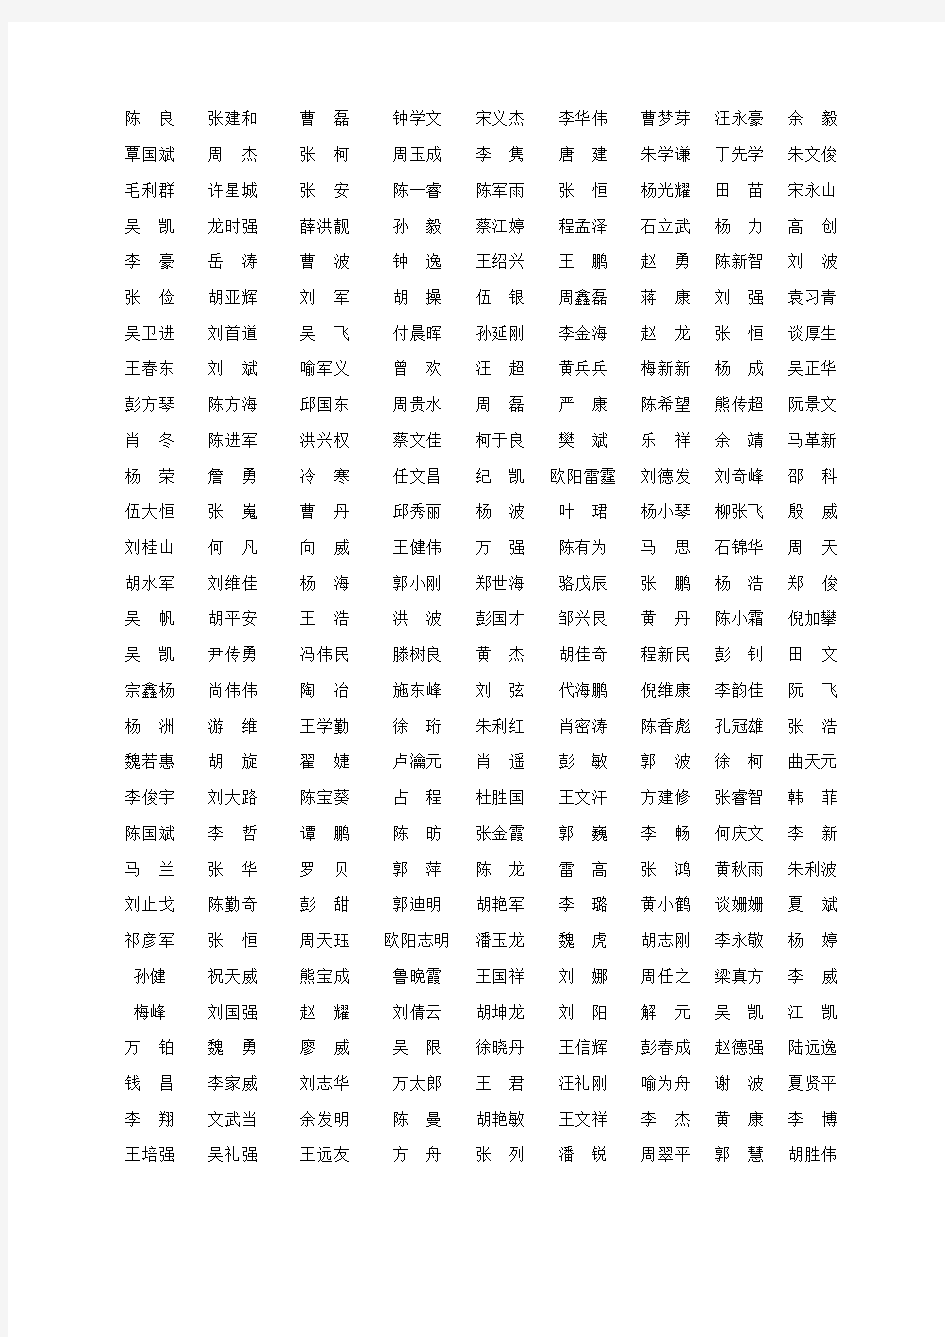 2013年湖北省监理员资格考试成绩名单